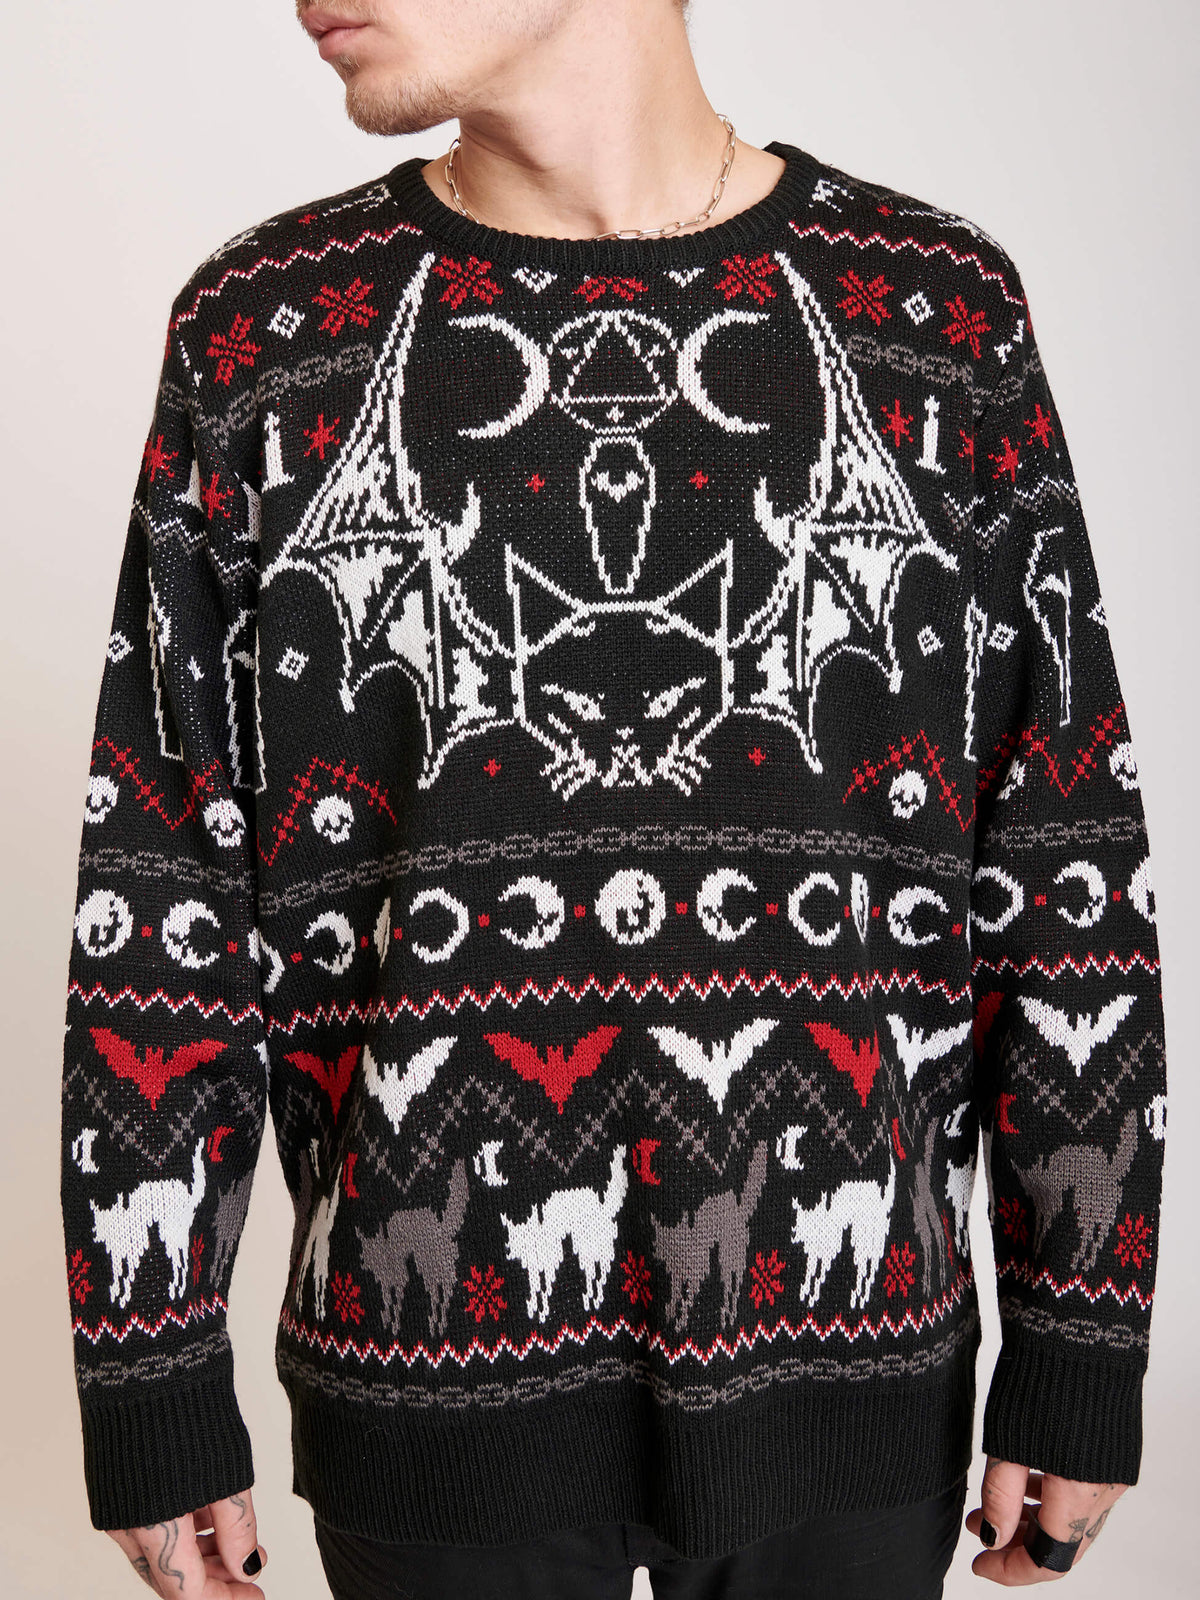 bat cat ugly xmas sweater